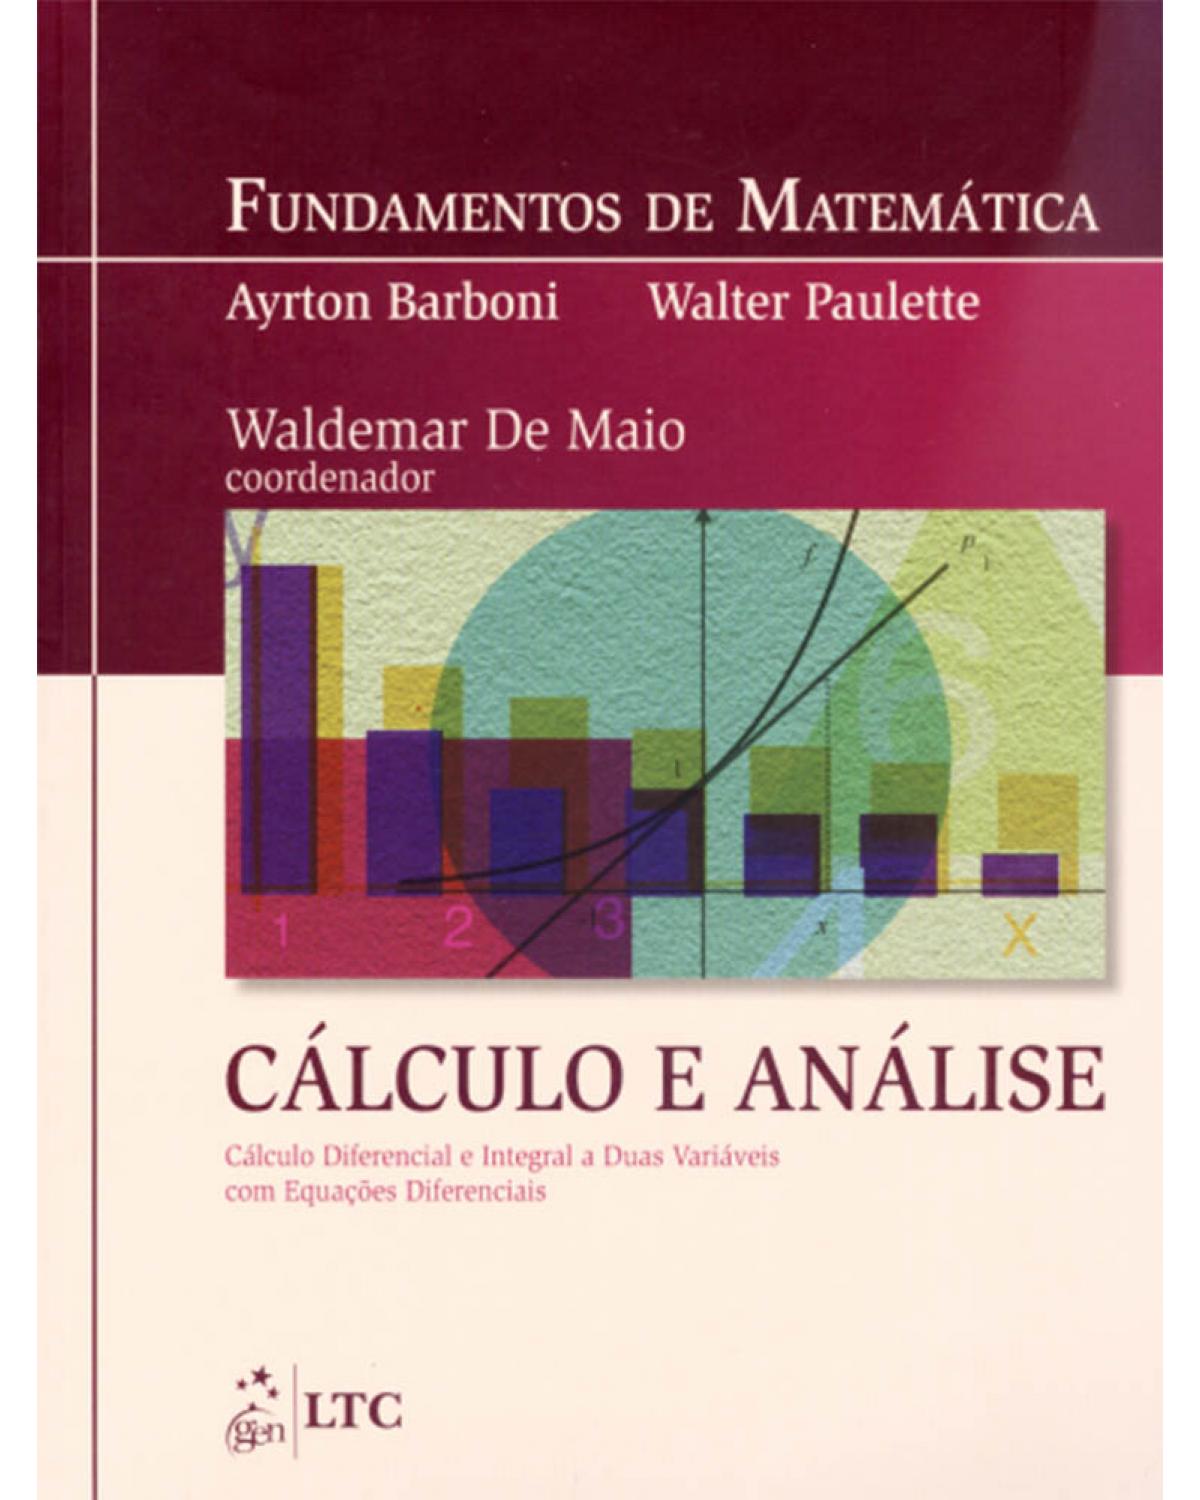 Fundamentos de matemática - Cálculo e análise - Cálculo diferencial e integral a duas variáveis com equações diferenciais - 1ª Edição | 2009